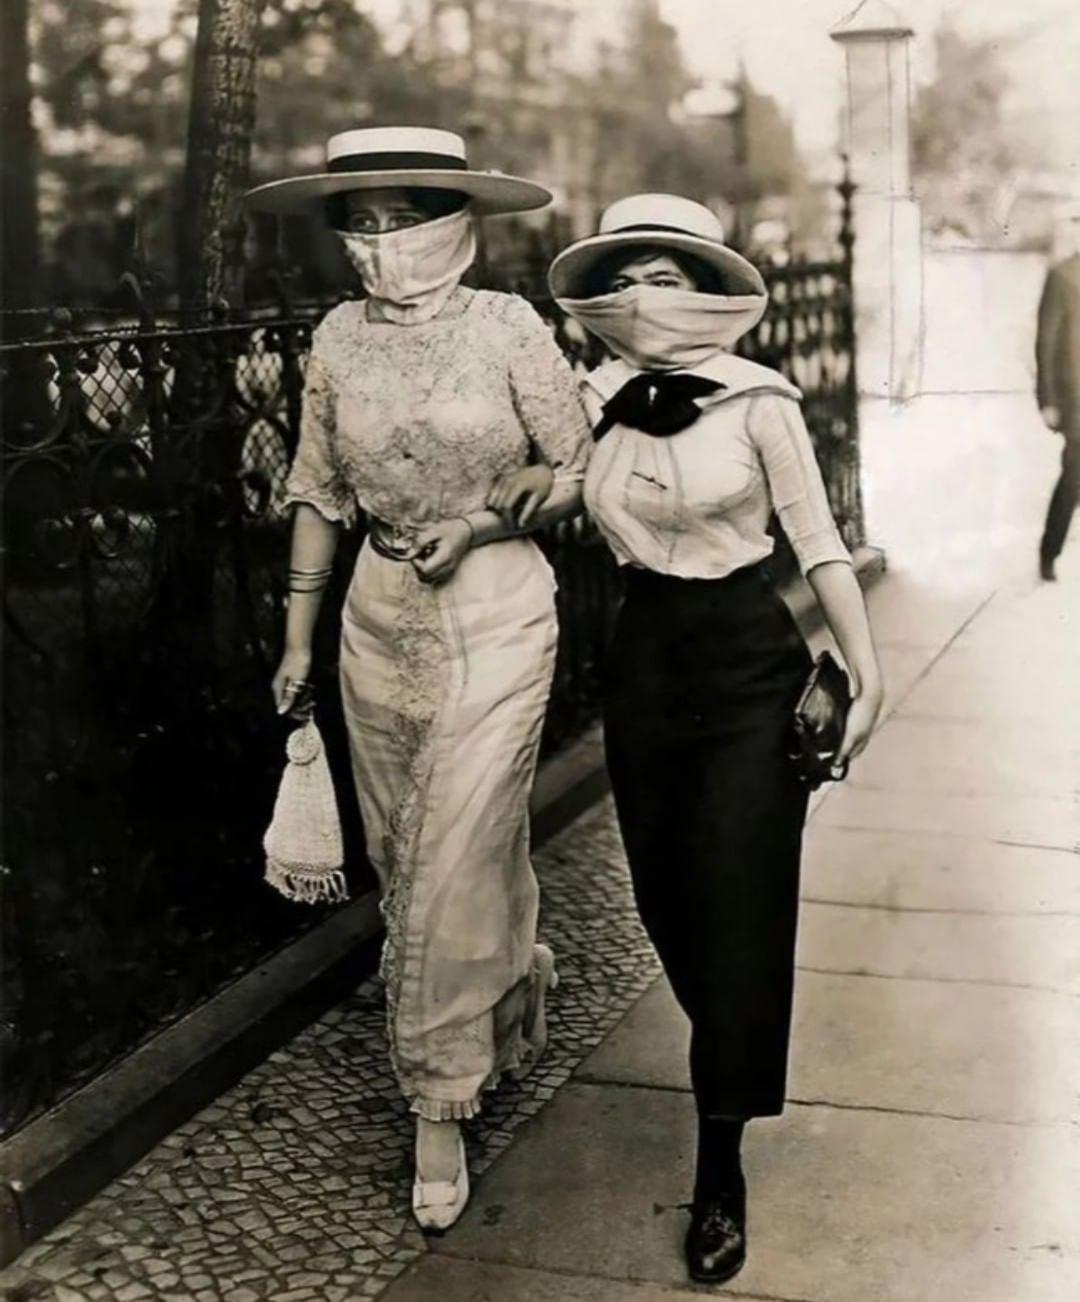 Photograph taken during the Spanish flu outbreak,1918.jpg